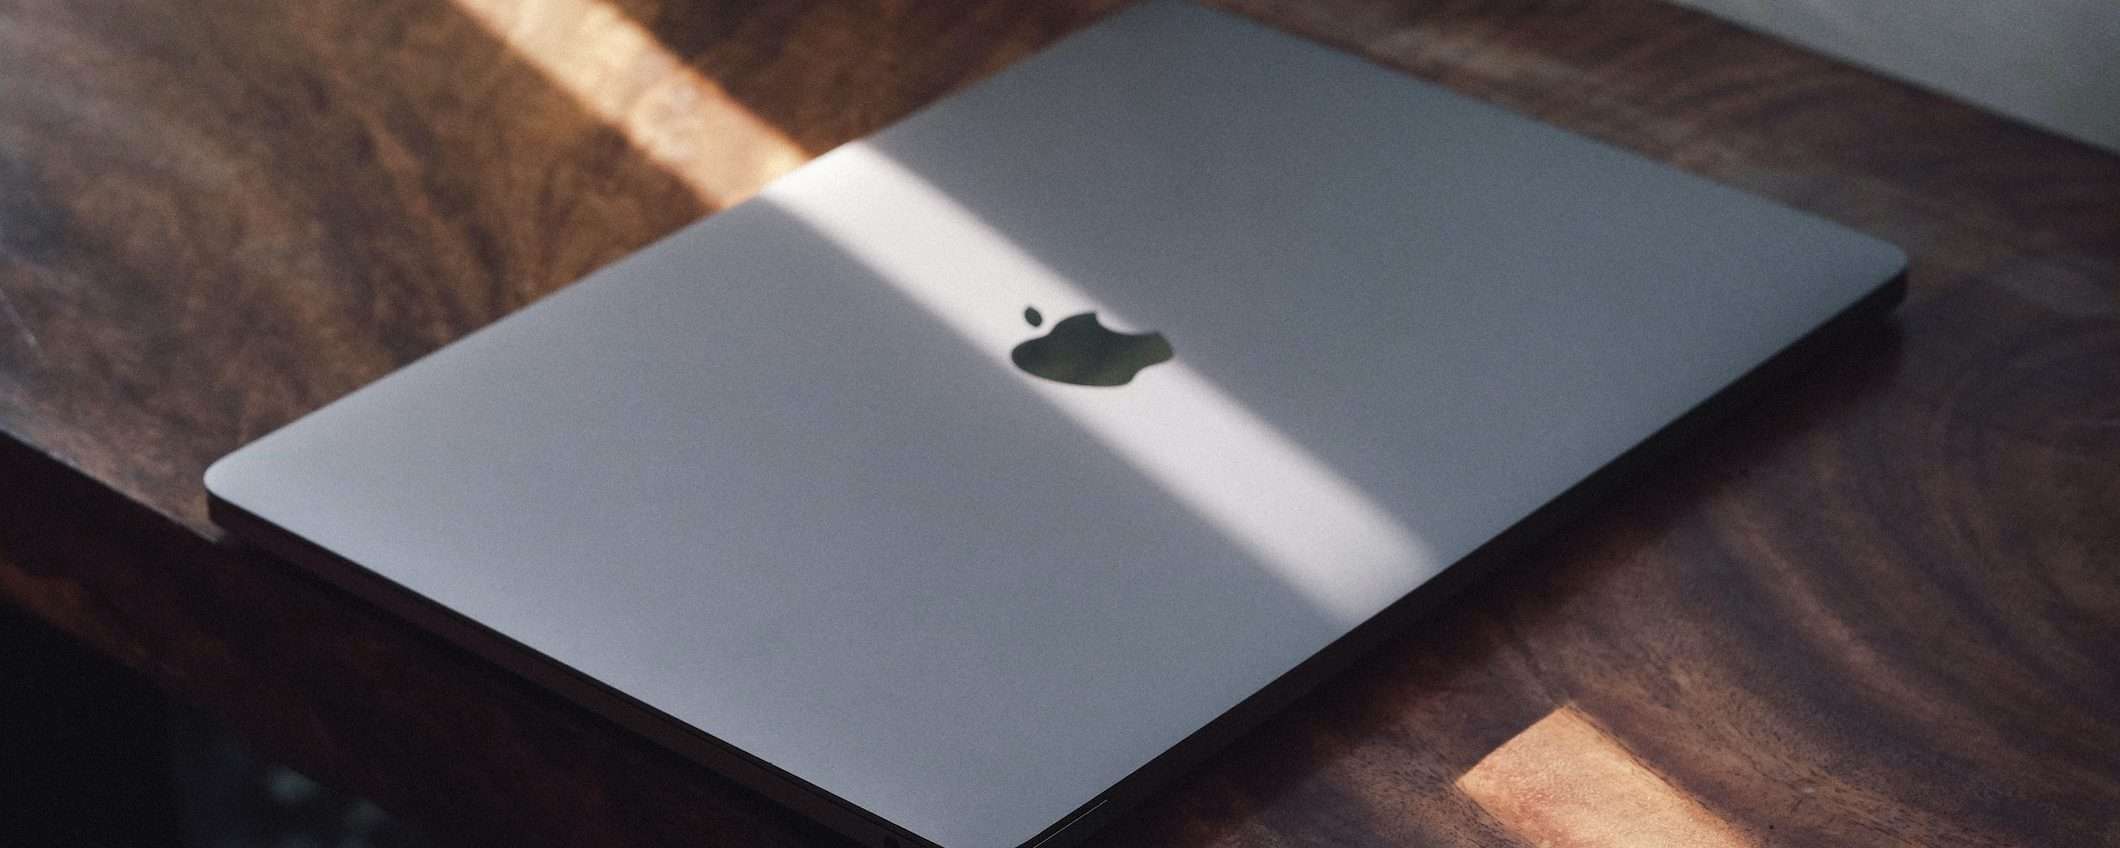 Apple: il MacBook Pro 13' arriverà dopo la WWDC